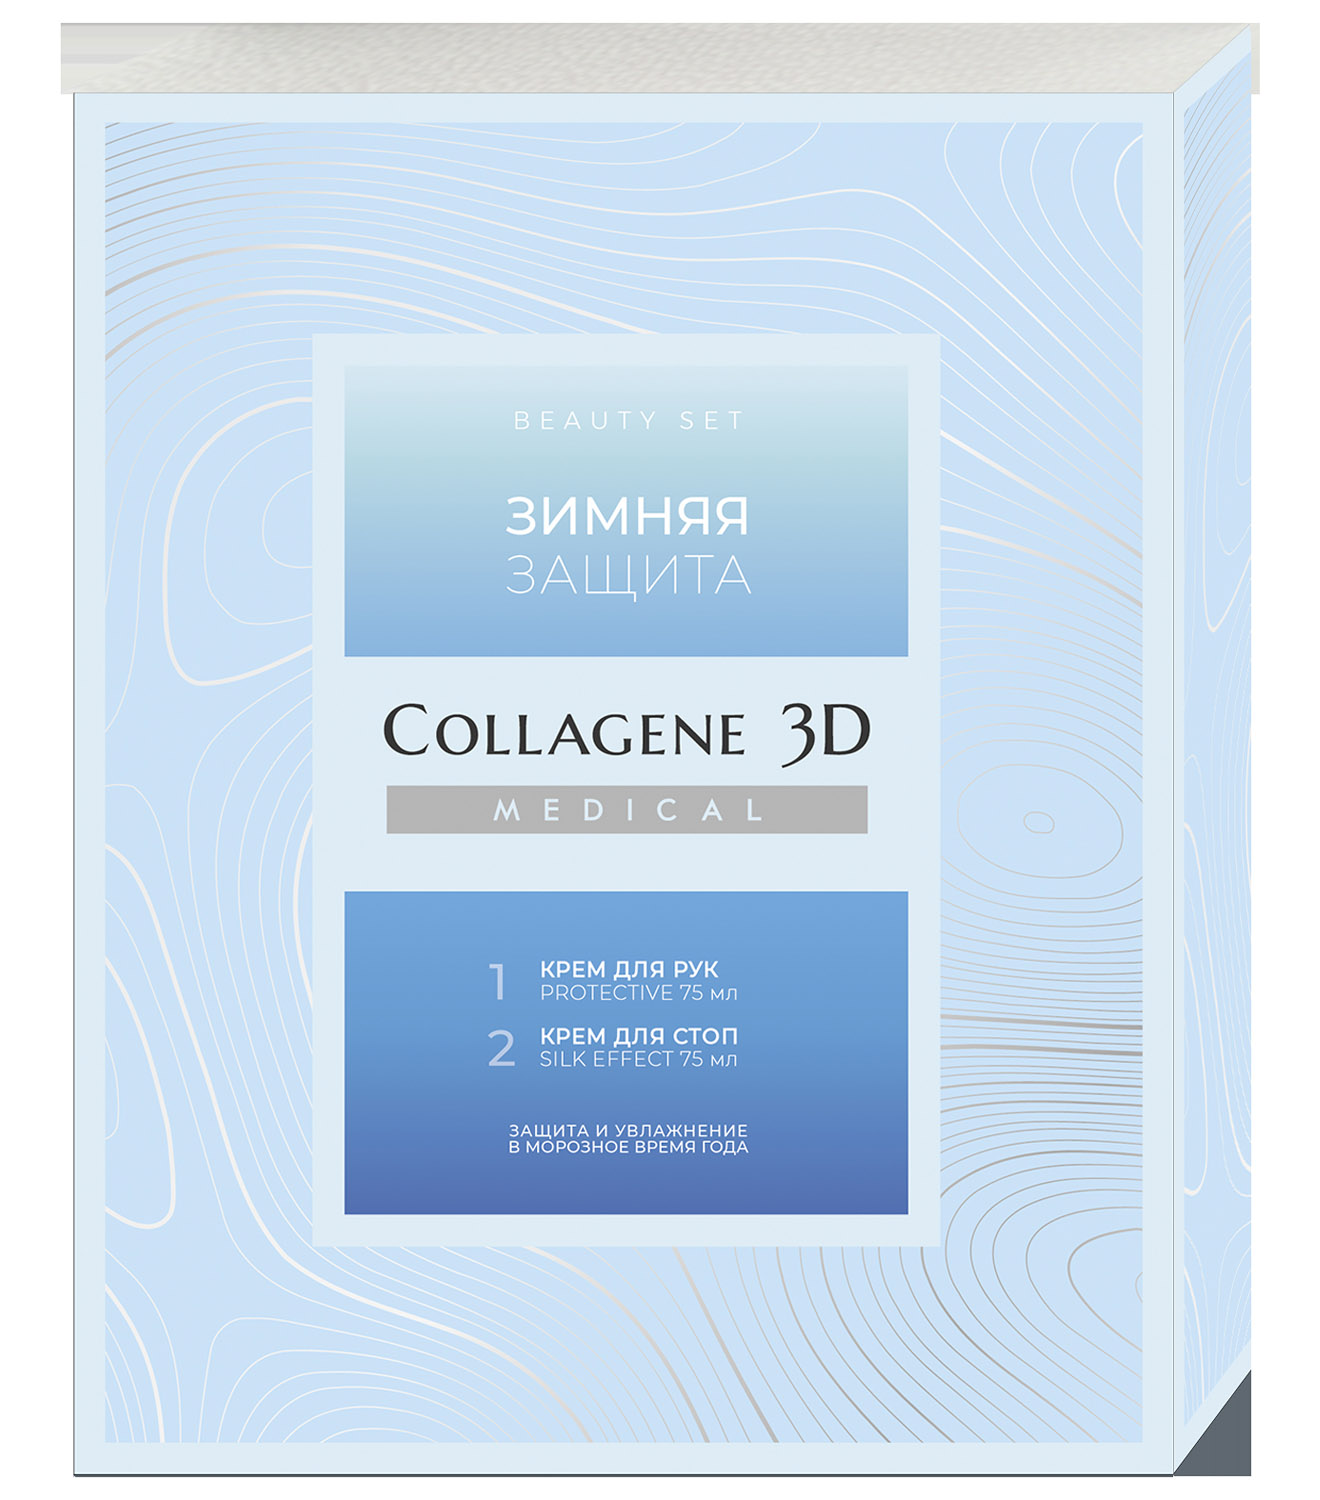 Medical Collagene 3D Подарочный набор Зимняя защита: крем для рук 75 мл, крем для стоп 75 мл (Medical Collagene 3D, Подарочные наборы)